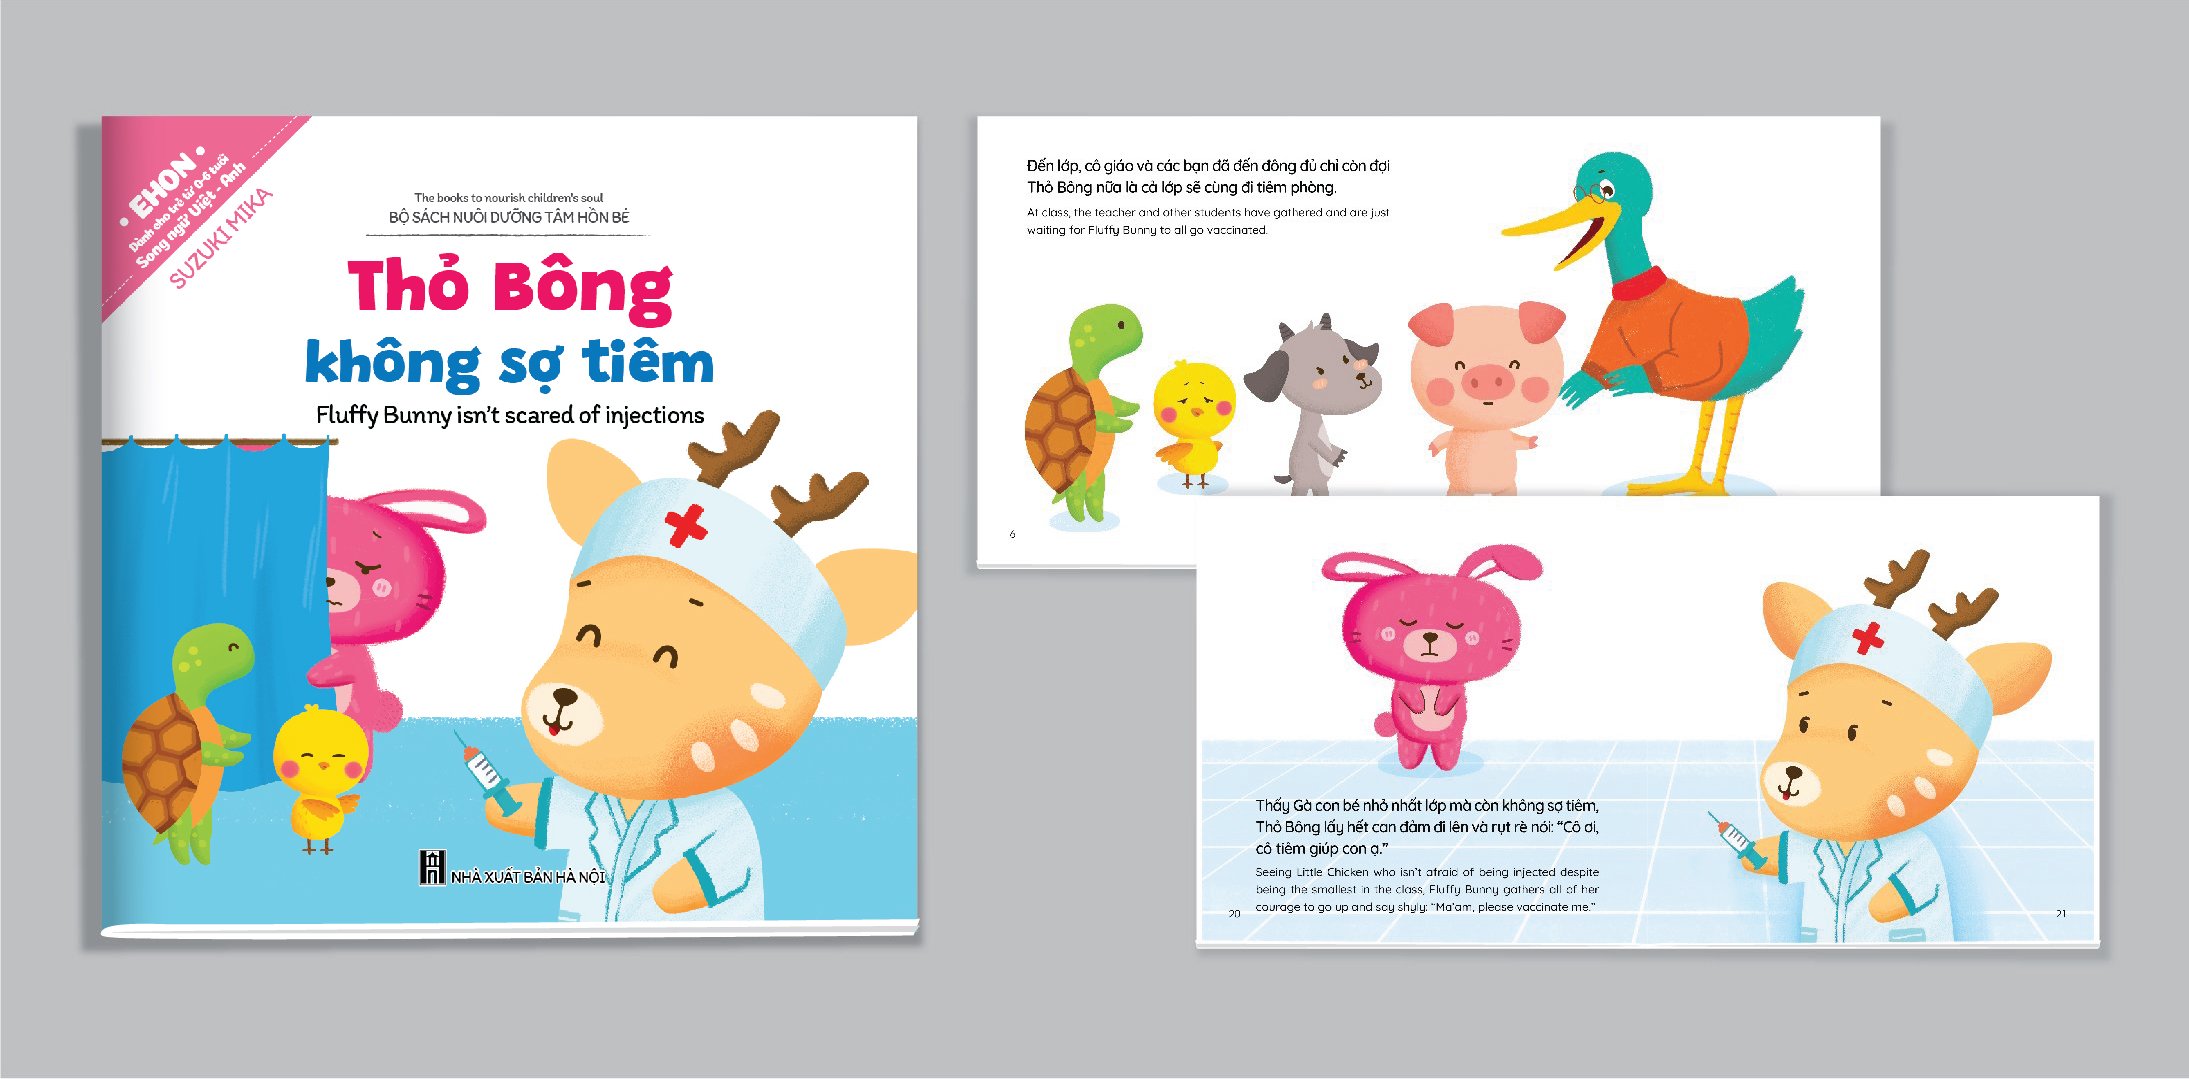 Bộ Ehon song ngữ Anh - Việt (5 cuốn Thỏ Bông) - Có file nghe kể - Bộ sách nuôi dưỡng tâm hồn bé 0 - 6 tuổi